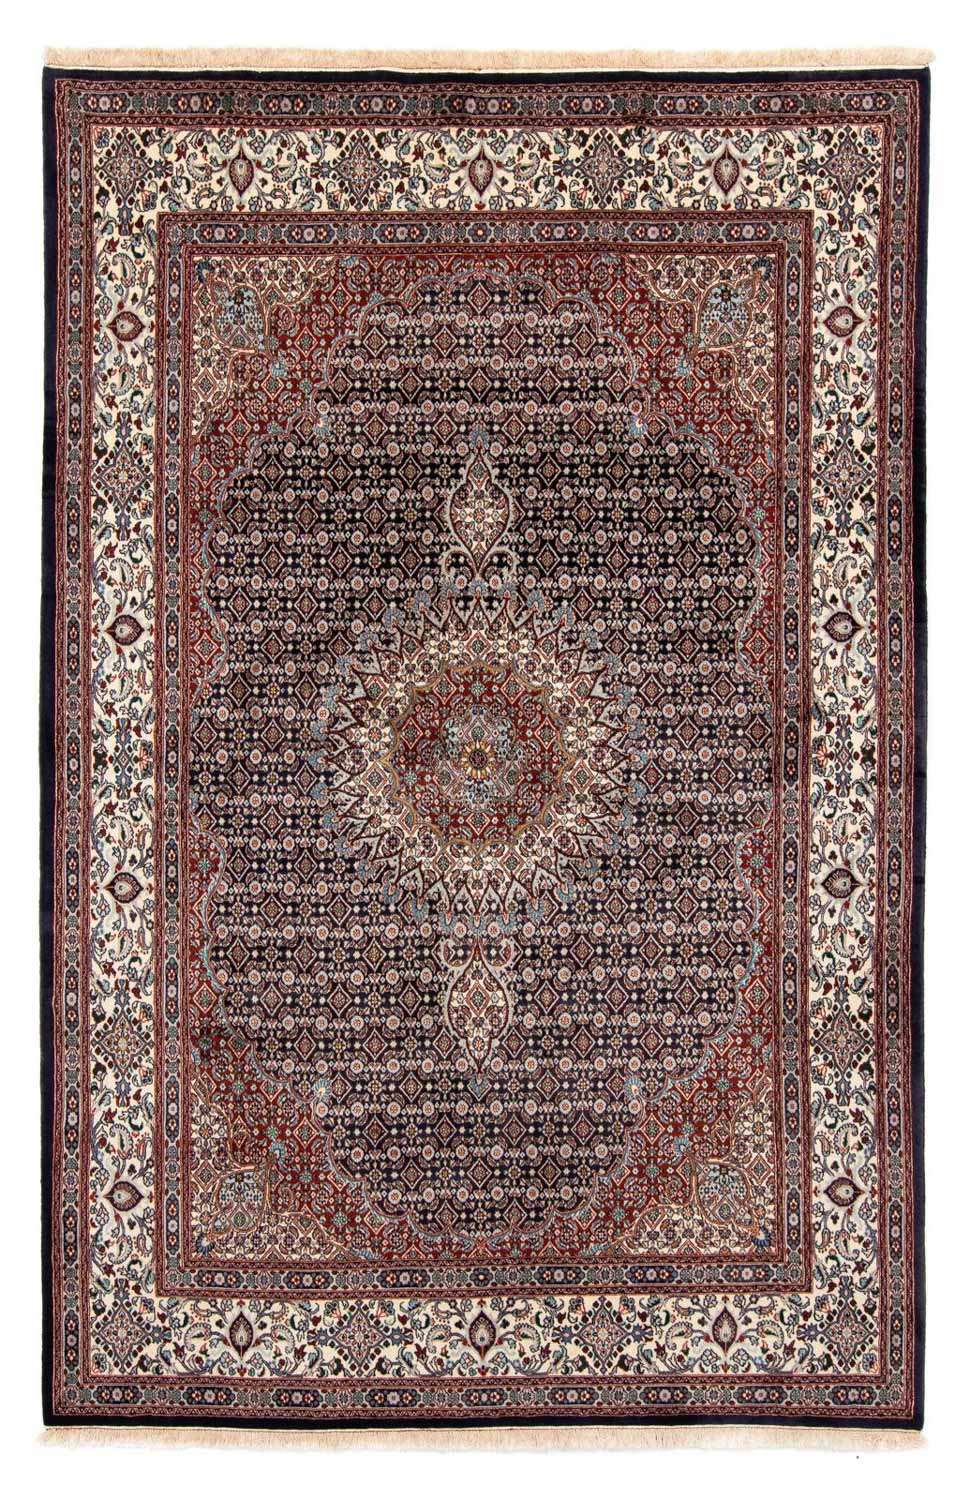 Dywan perski - Klasyczny - 290 x 196 cm - ciemnoniebieski